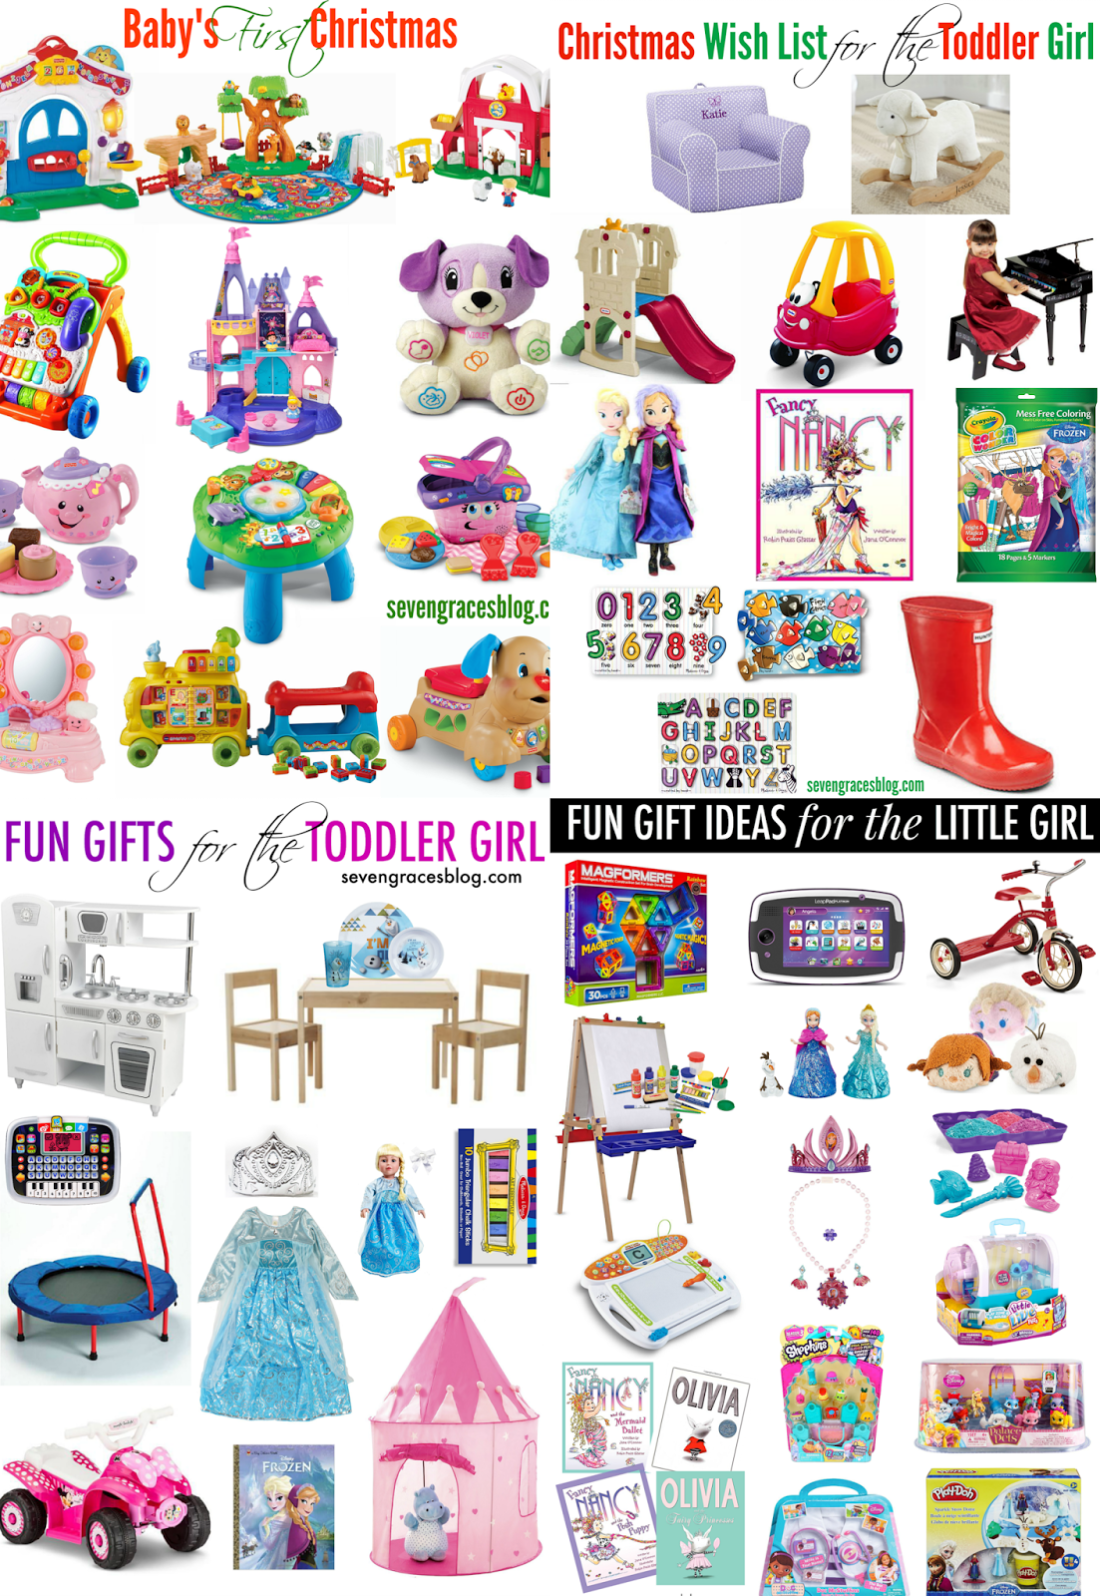 gift ideas for little girls